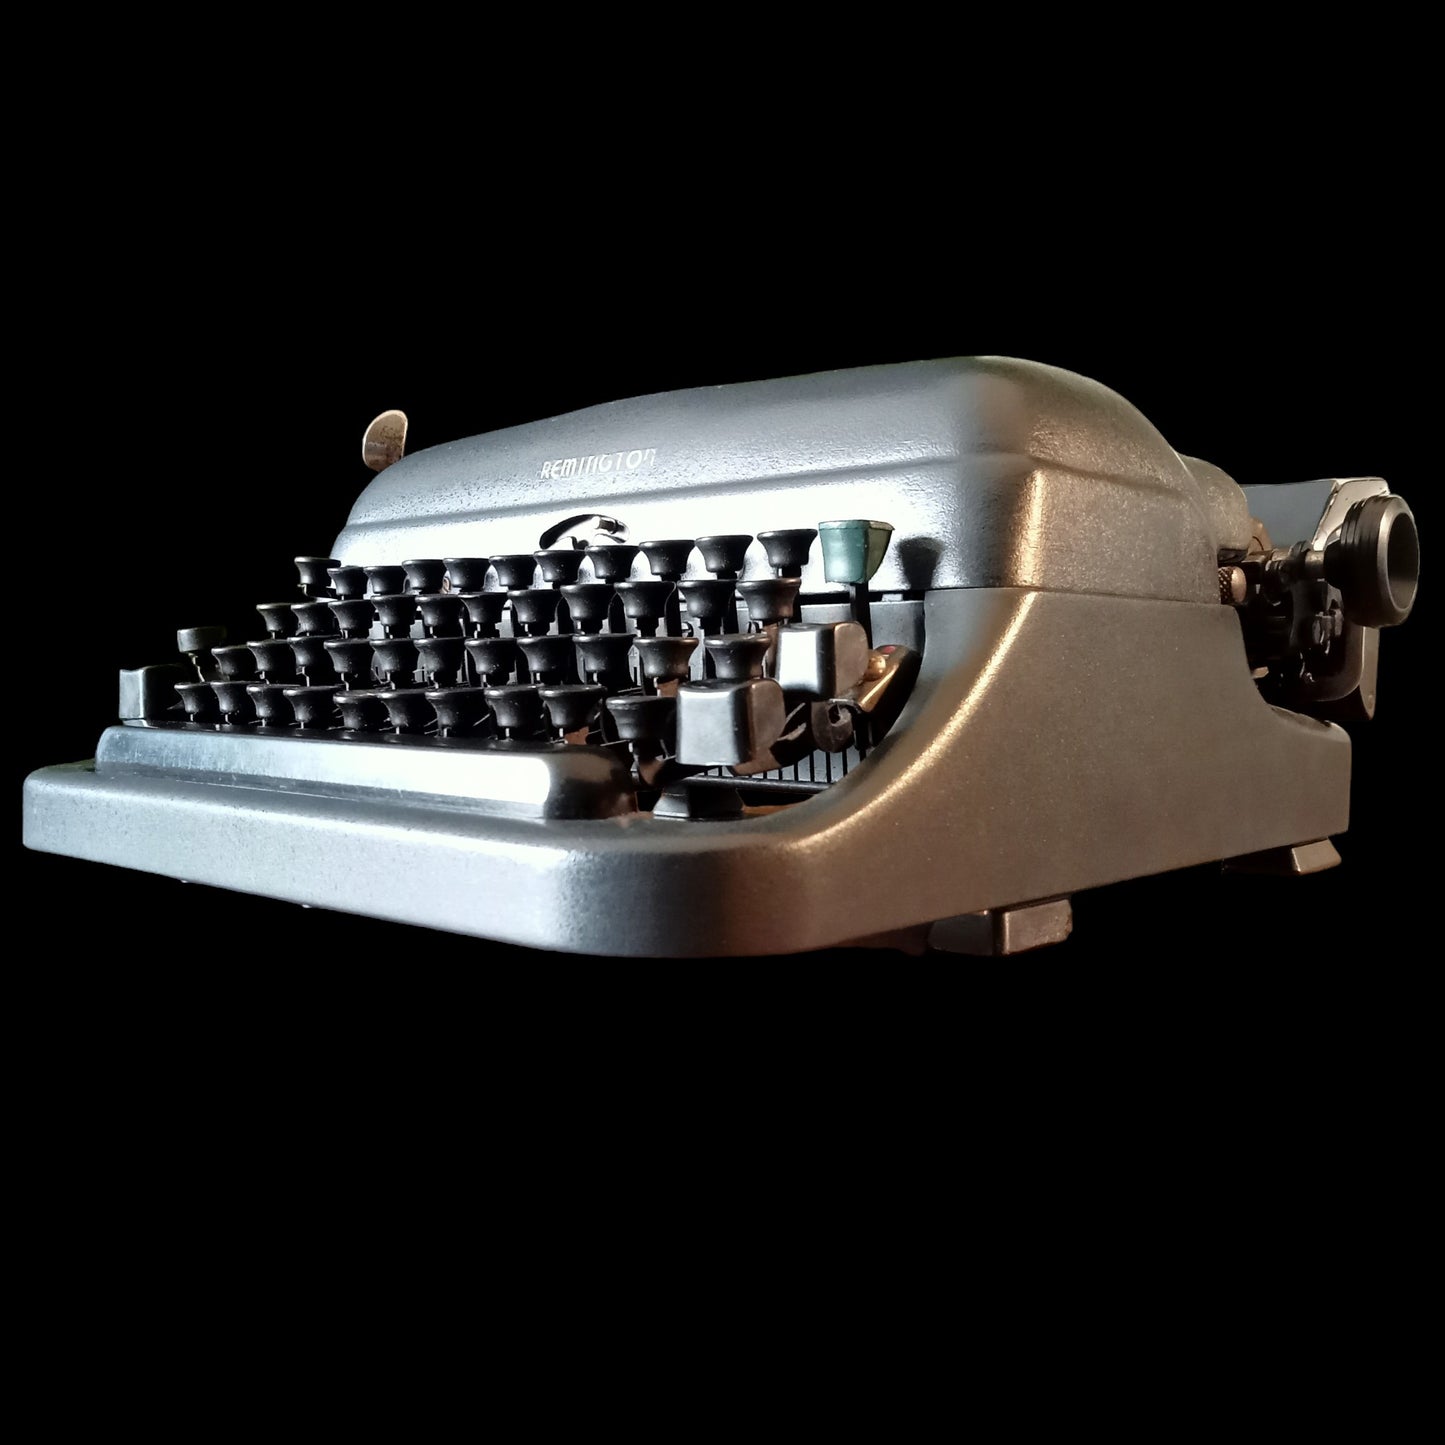 Remington 5 Model Typewriter